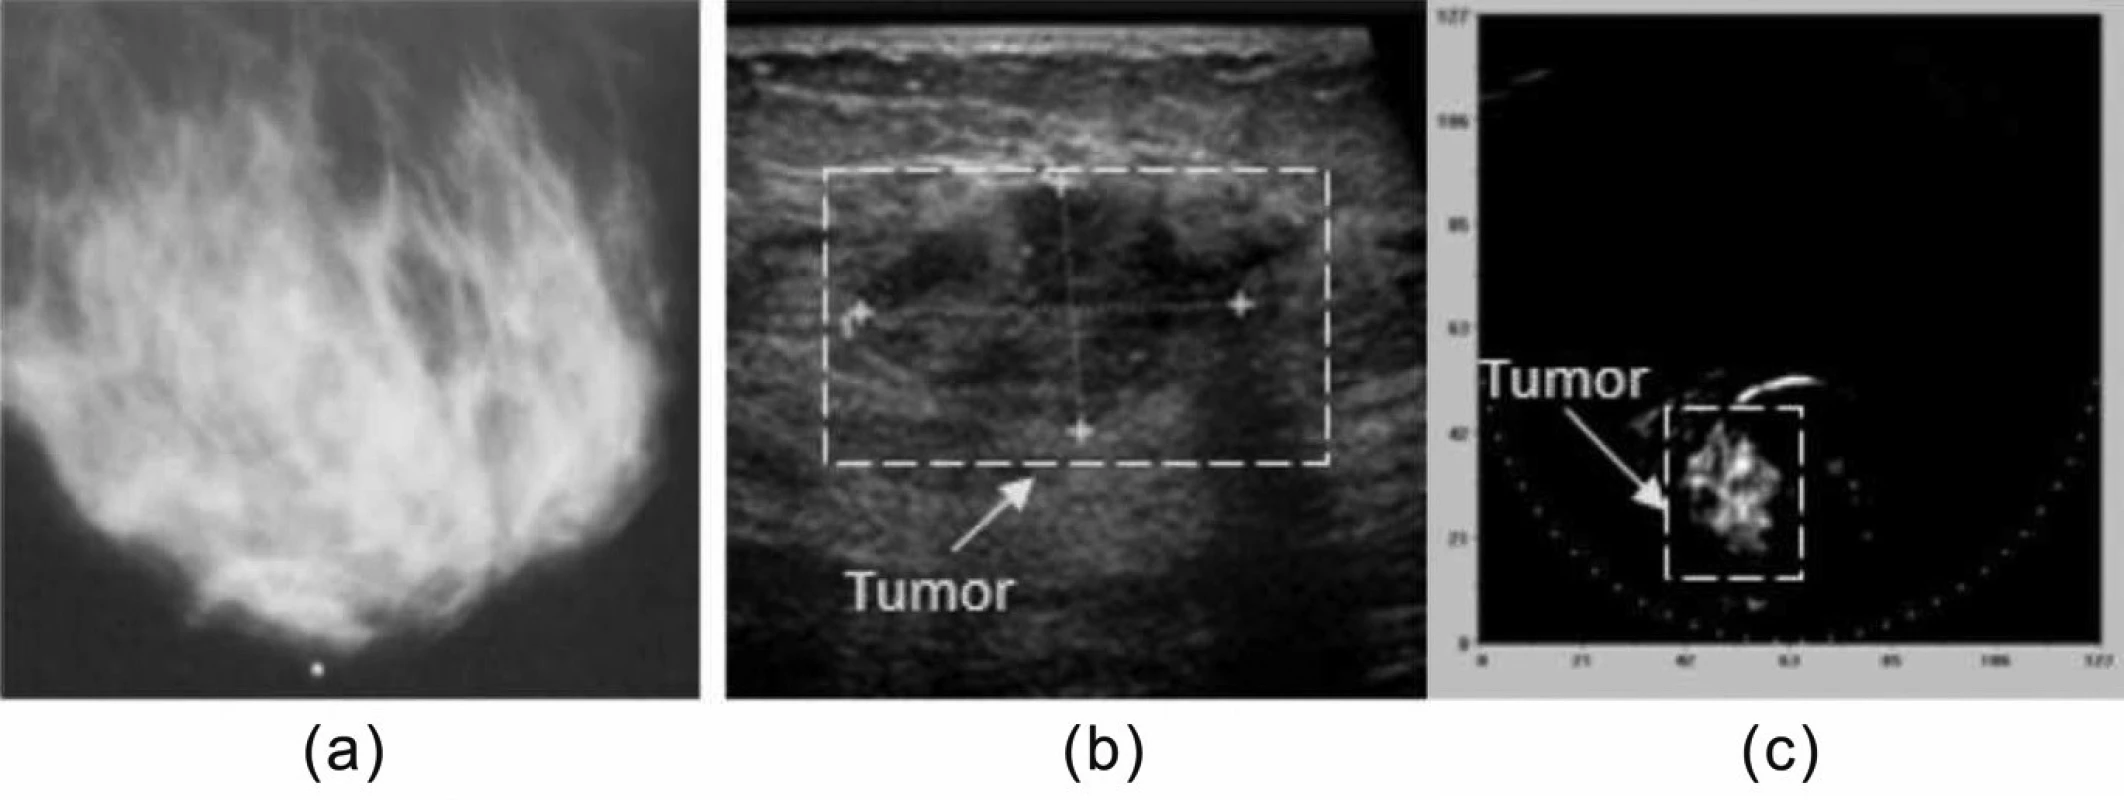 Příklad klinického využití fotoakustické tomografie.
(a) mediolaterální mamografie, (b) ultrasonogram,
(c) optoakustický obraz. Vysoký kontrast objektu v obraze
(c) svědčí pro zhoubný nádor. Přetištěno se svolením [15].